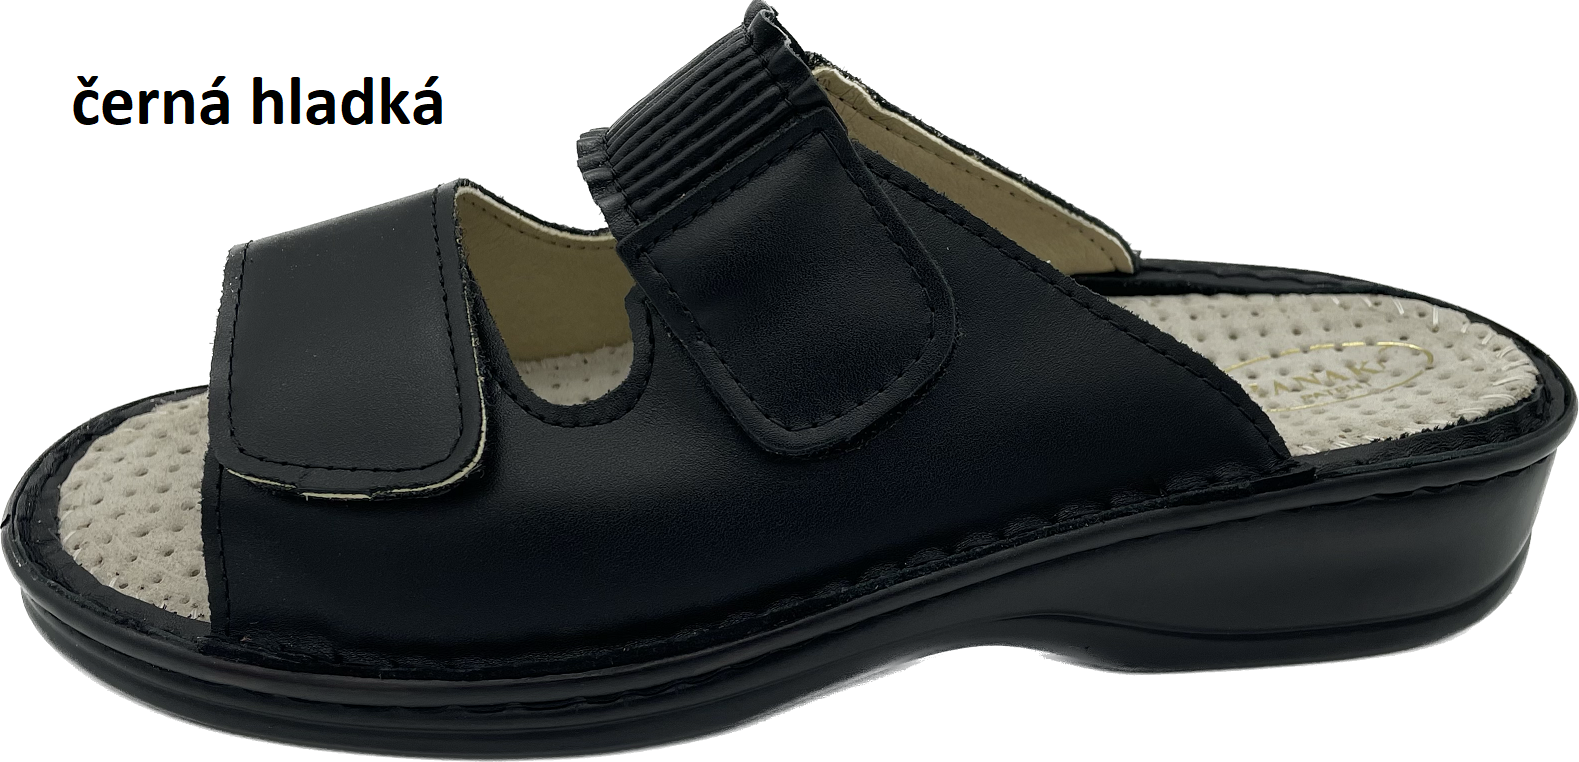 Boty Hanák vzor 304 - černá podešev Barva usně: černá hladká, Velikosti obuvi: 35